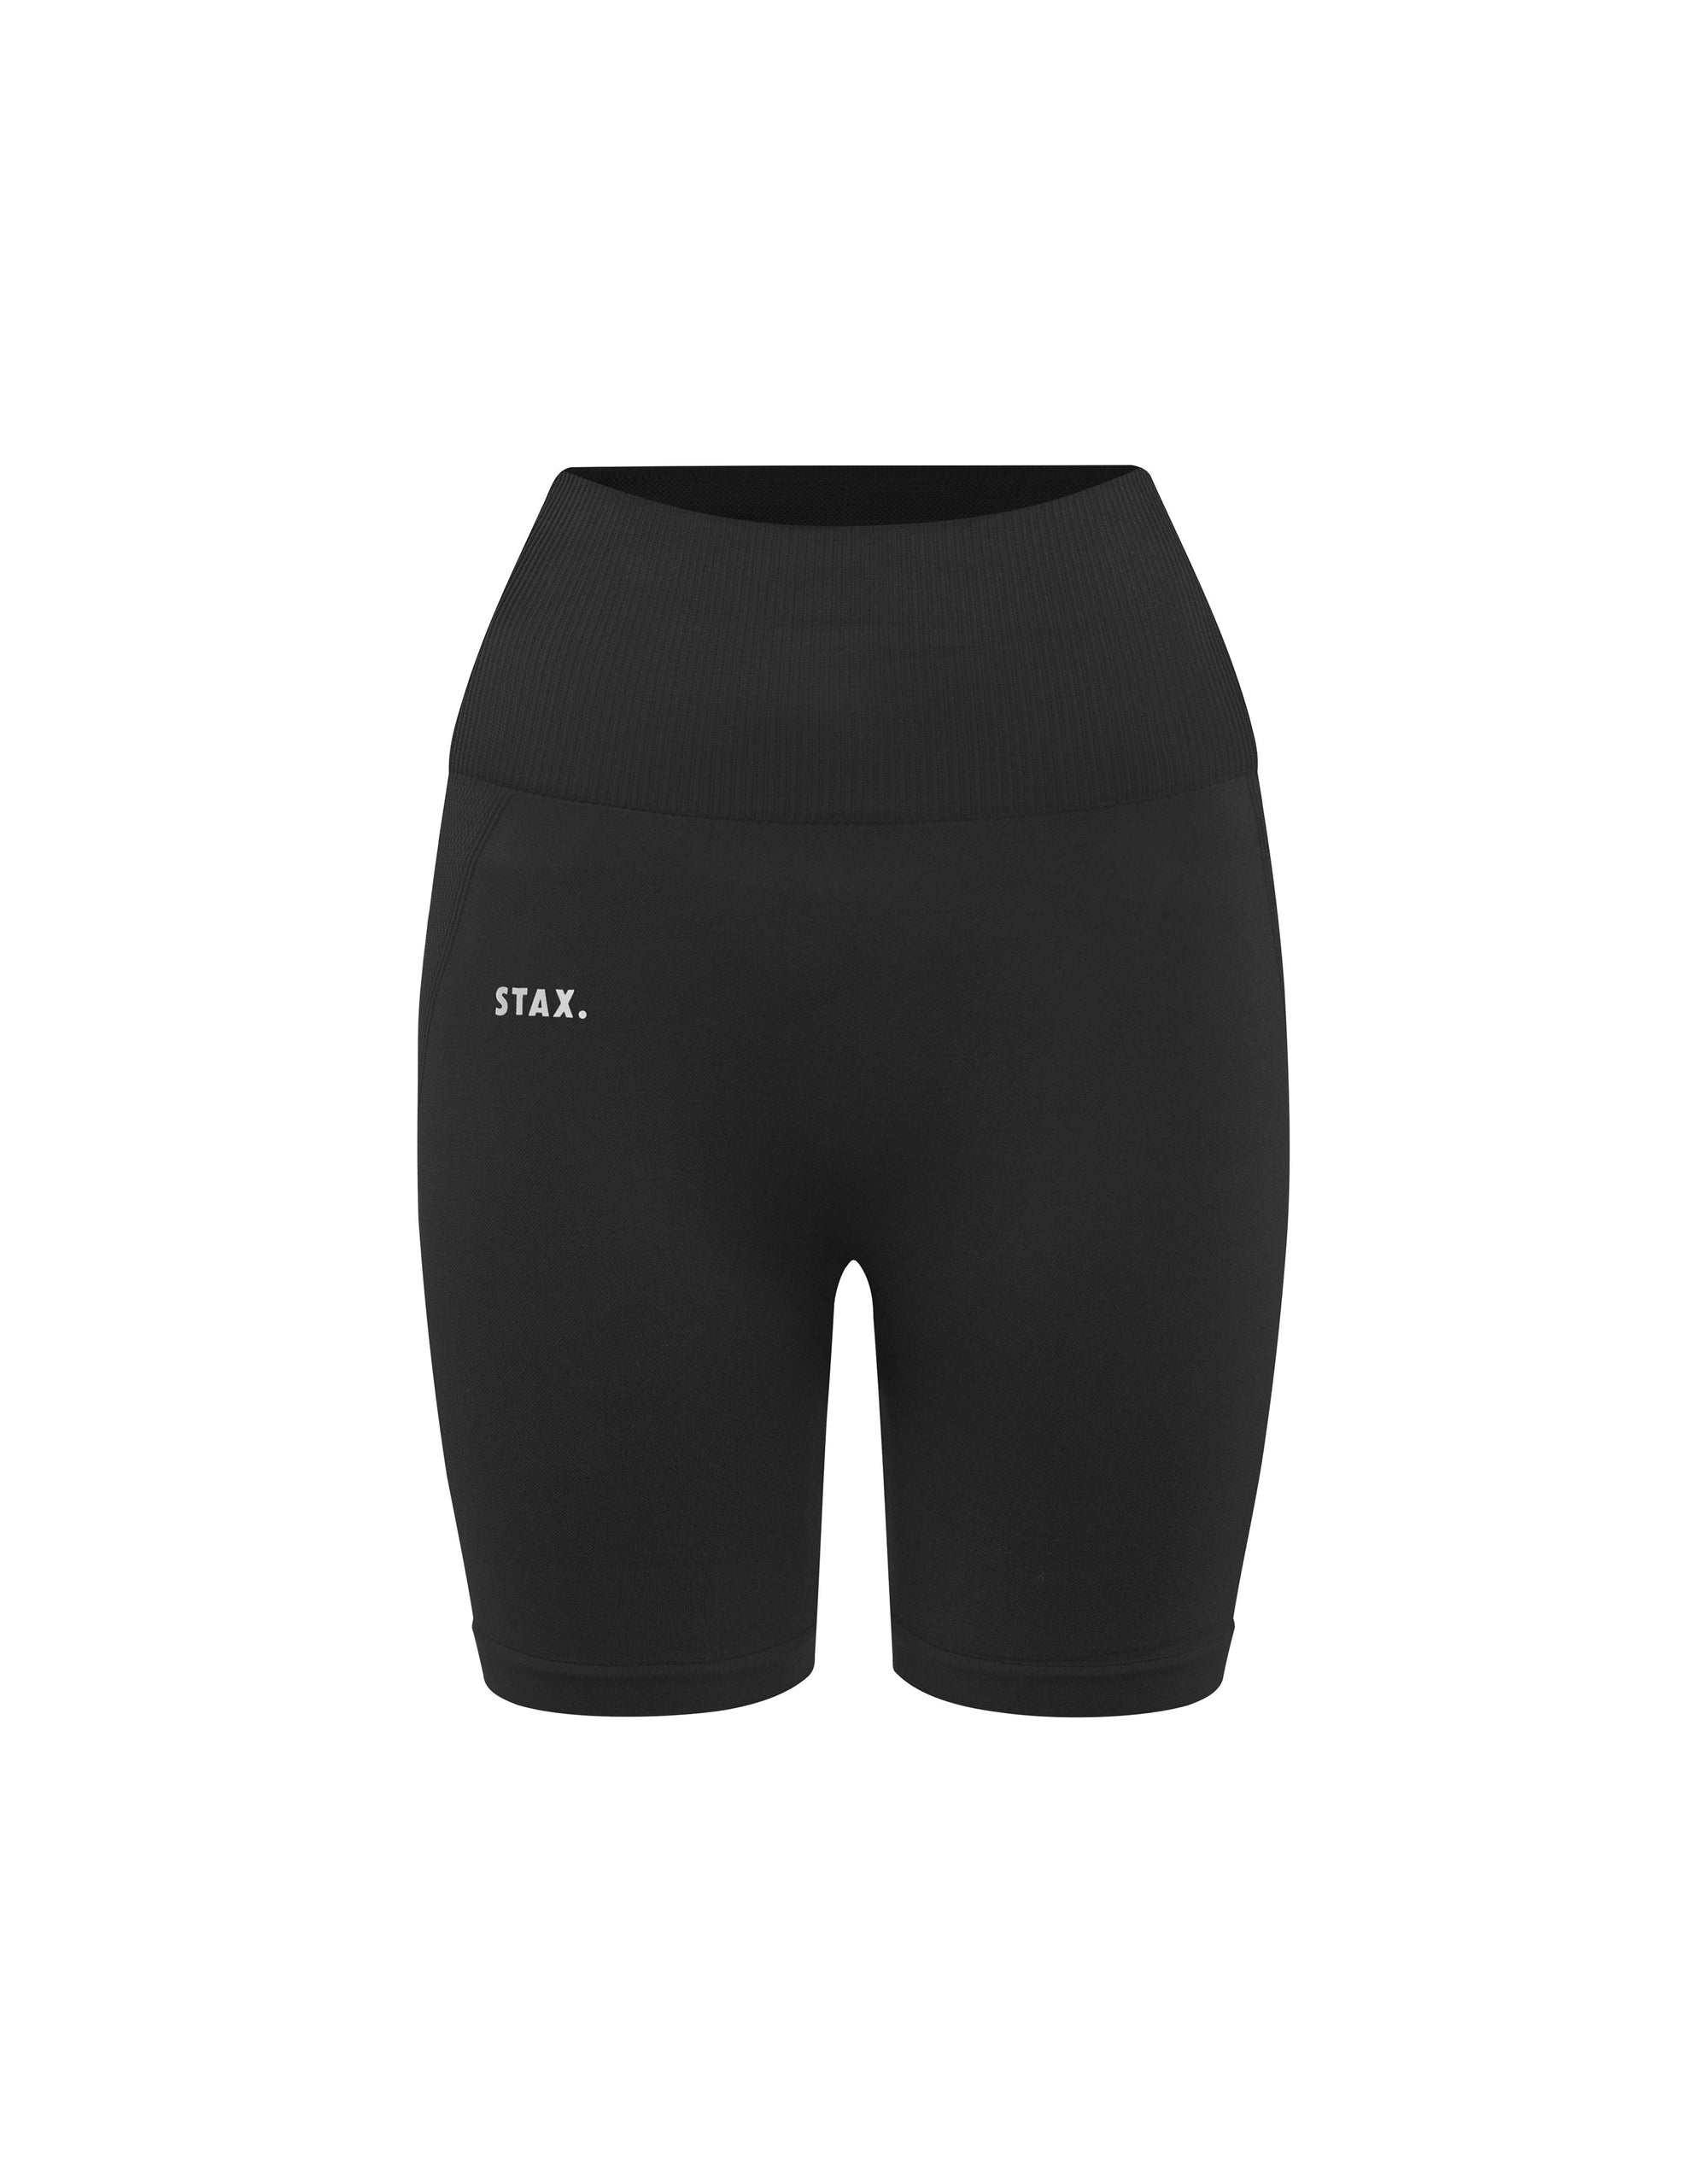 STAX. Premium Seamless V4 Midi Bike Shorts - Vanta Black